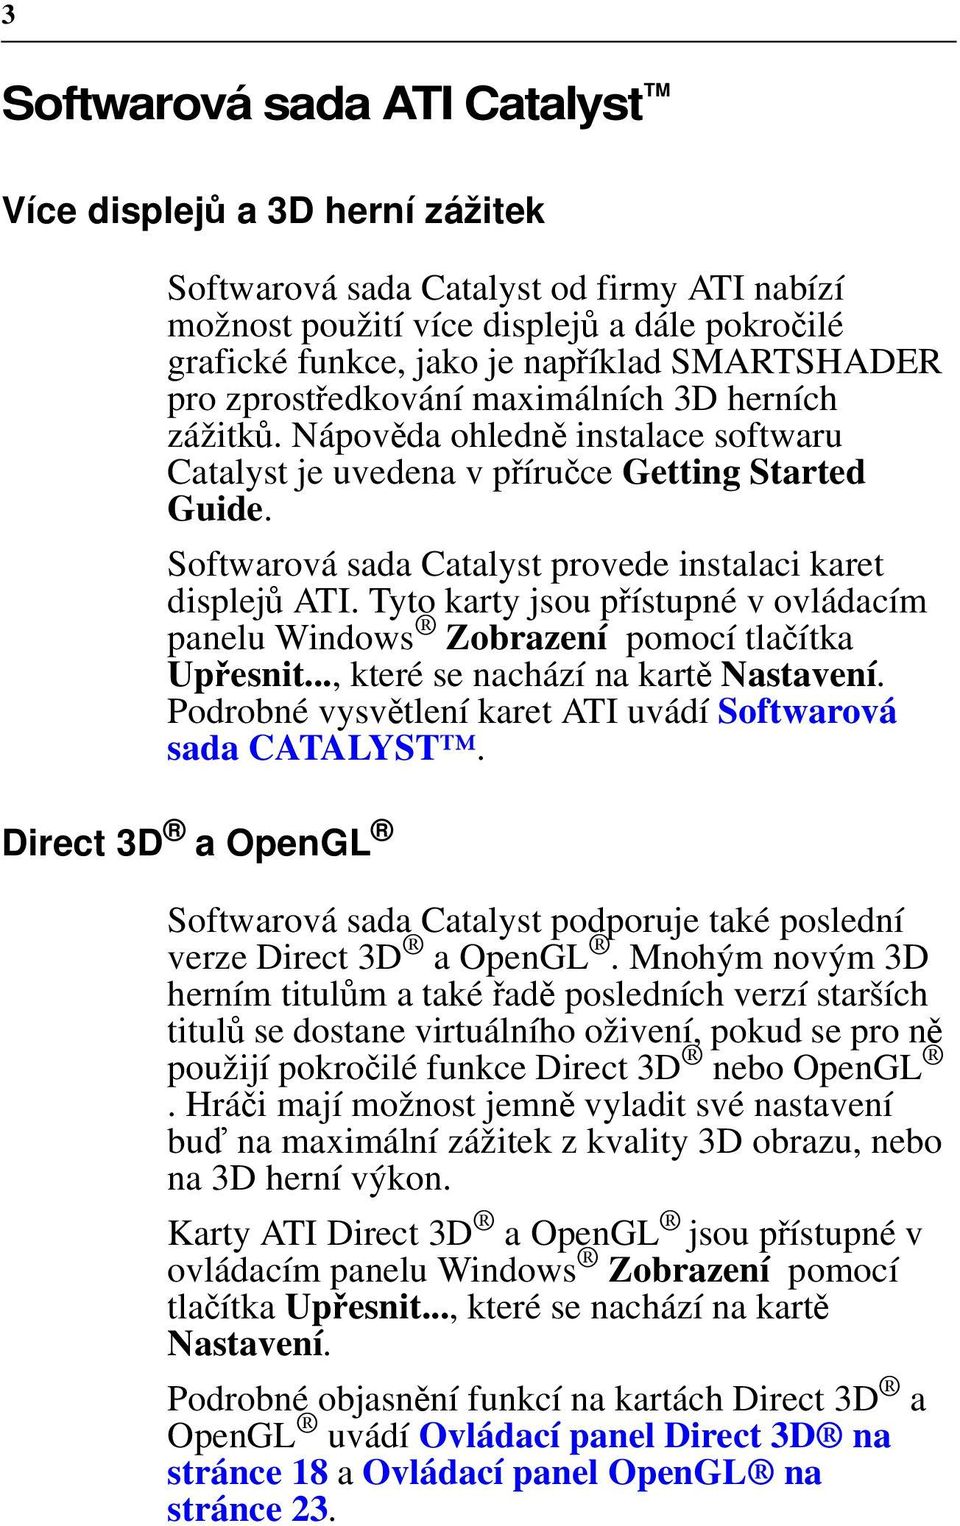 Softwarová sada Catalyst provede instalaci karet displejů ATI. Tyto karty jsou přístupné v ovládacím panelu Windows Zobrazení pomocí tlačítka Upřesnit..., které se nachází na kartě Nastavení.